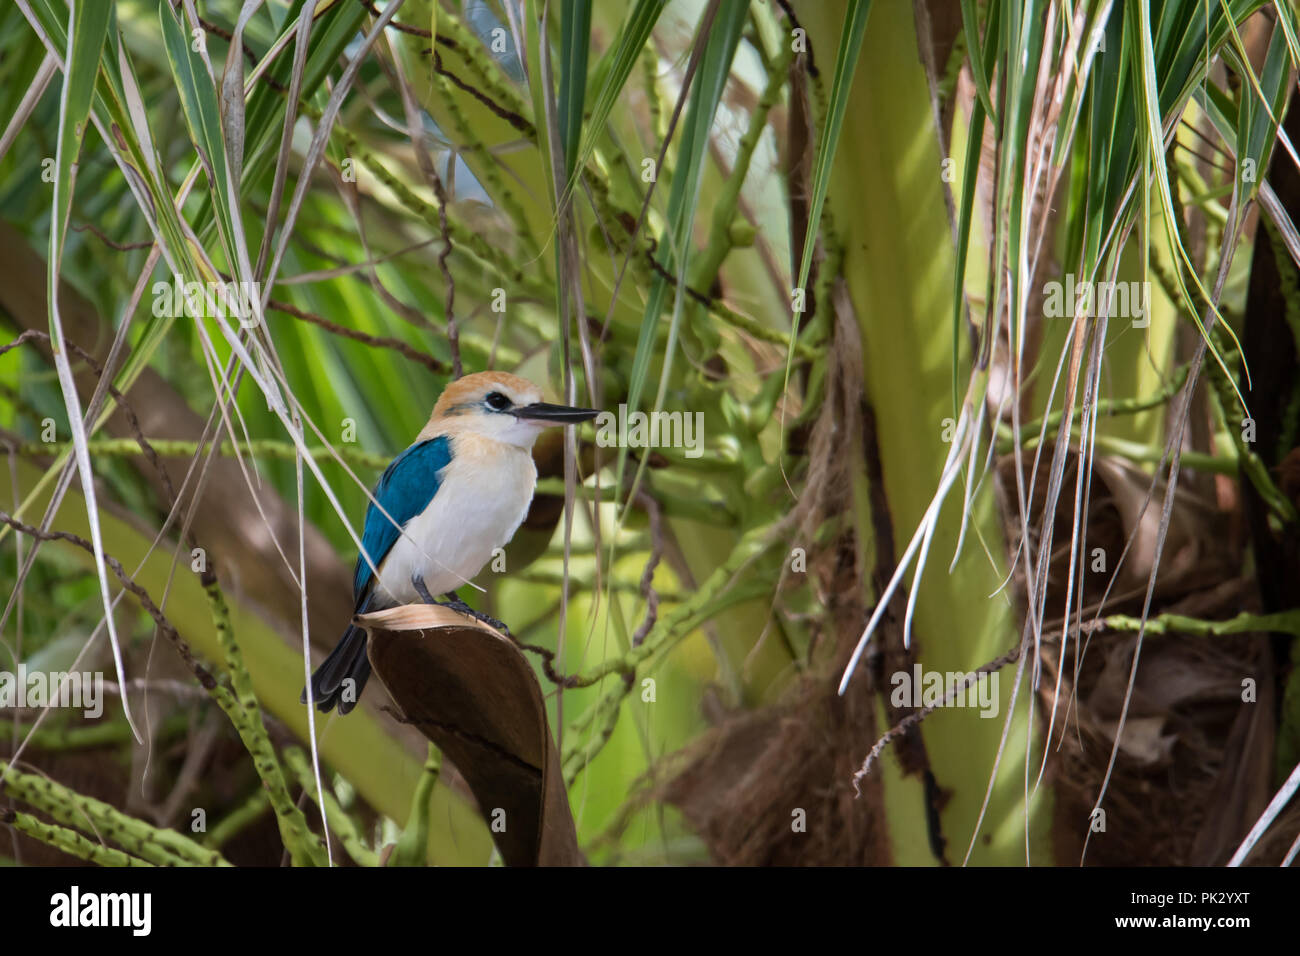 L'endémie Niau Kingfisher, un magnifique oiseau trouvé seulement sur une île dans l'archipel des Tuamotu en Polynésie française, est un important mouvement convulsif des ornithologues amateurs Banque D'Images